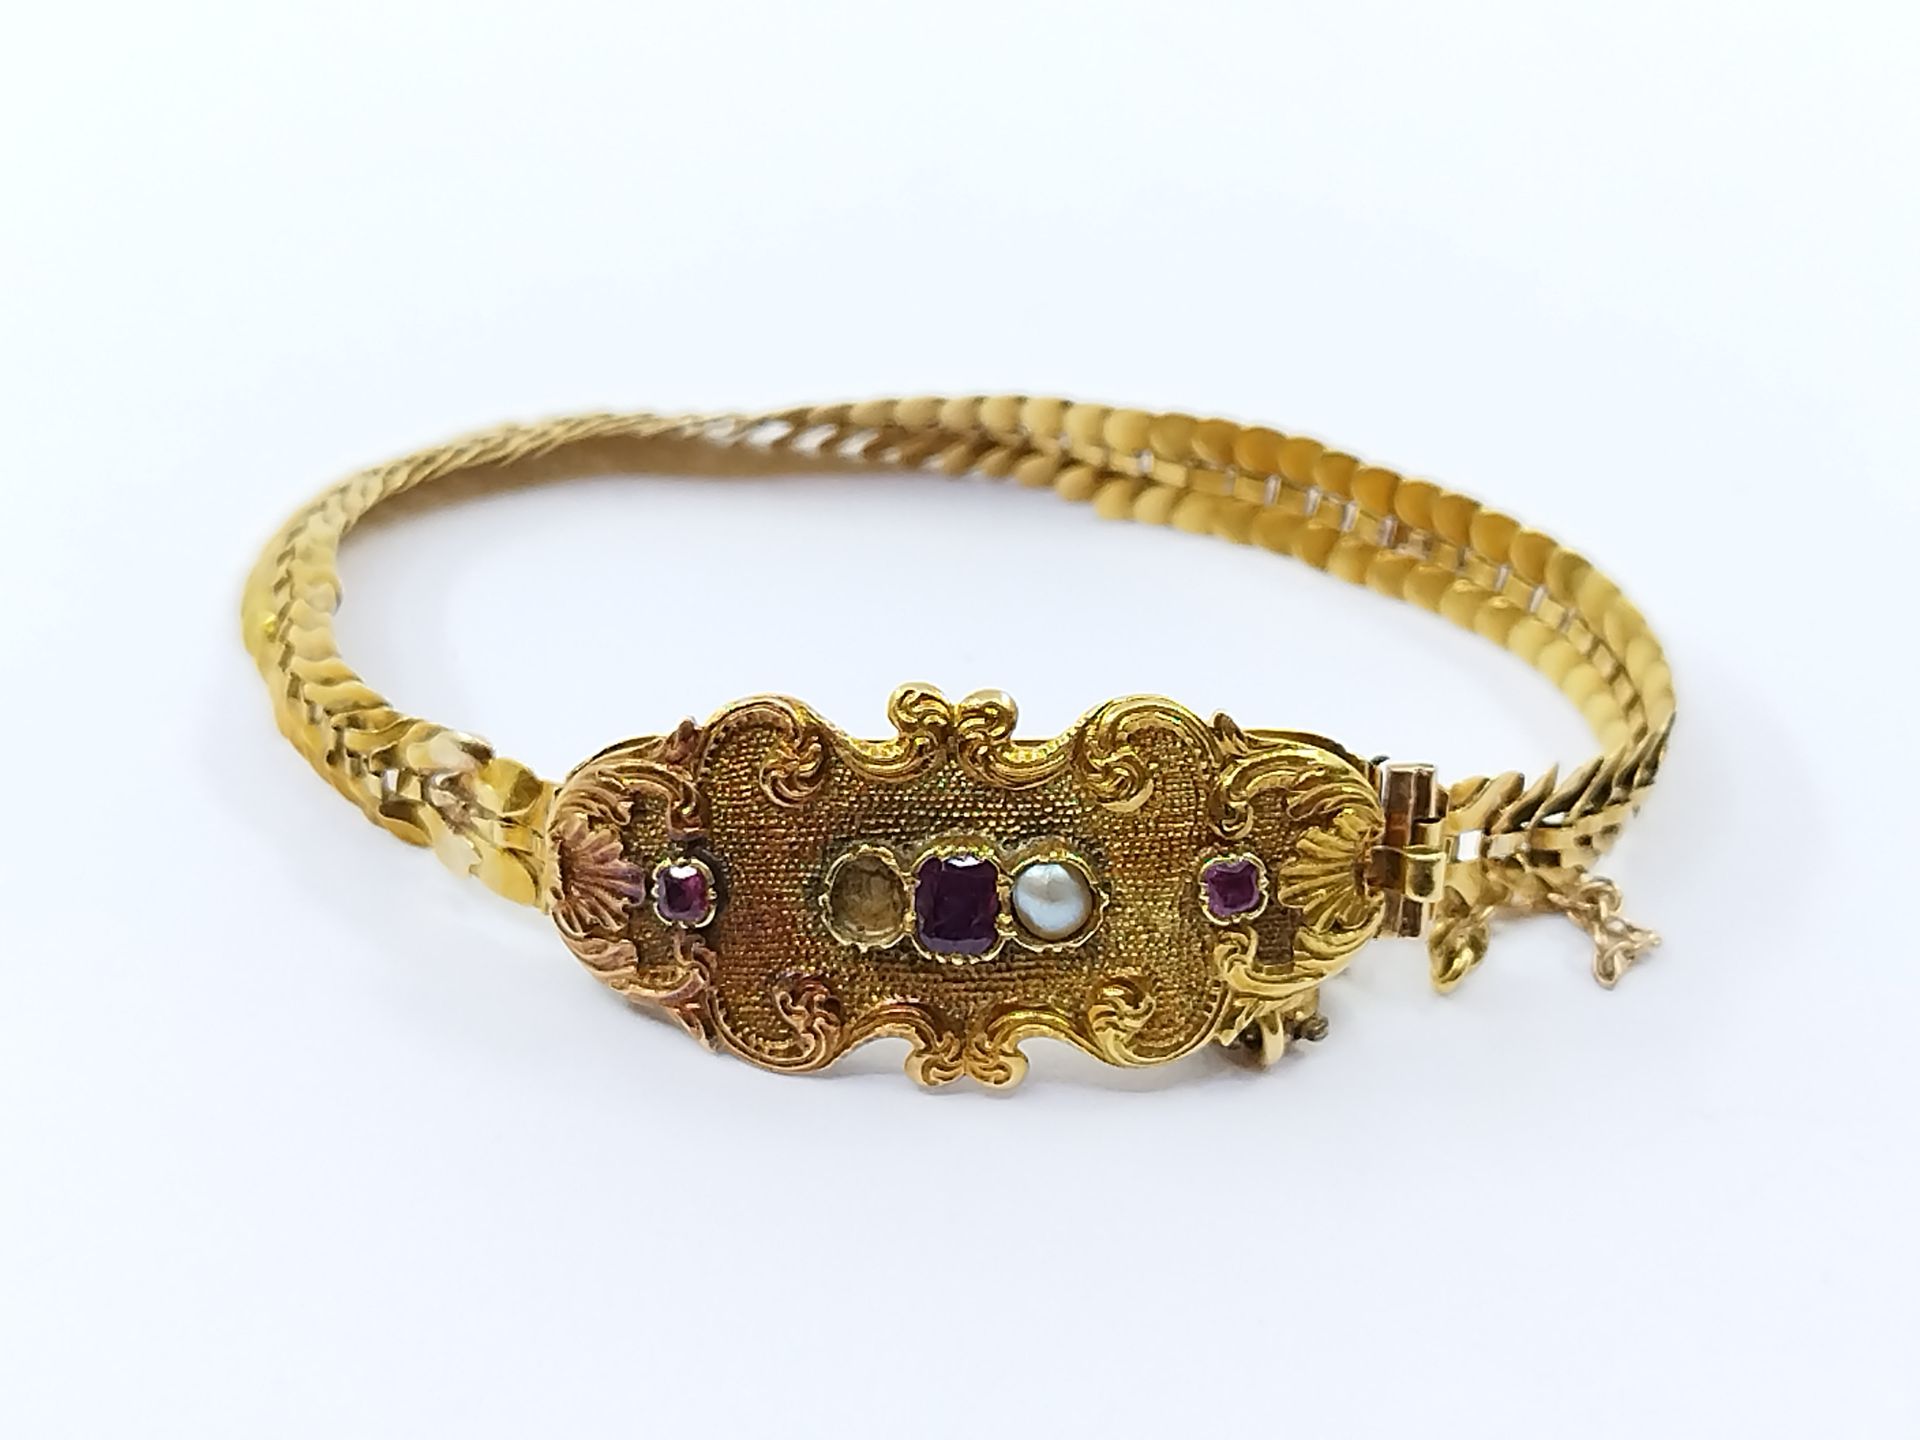 Null 750°黄金手镯，中央部分镶嵌有紫色宝石和珍珠的涡流（缺失）。

羊头标志 

毛重 : 9,03 g

棘轮扣

焊接的痕迹